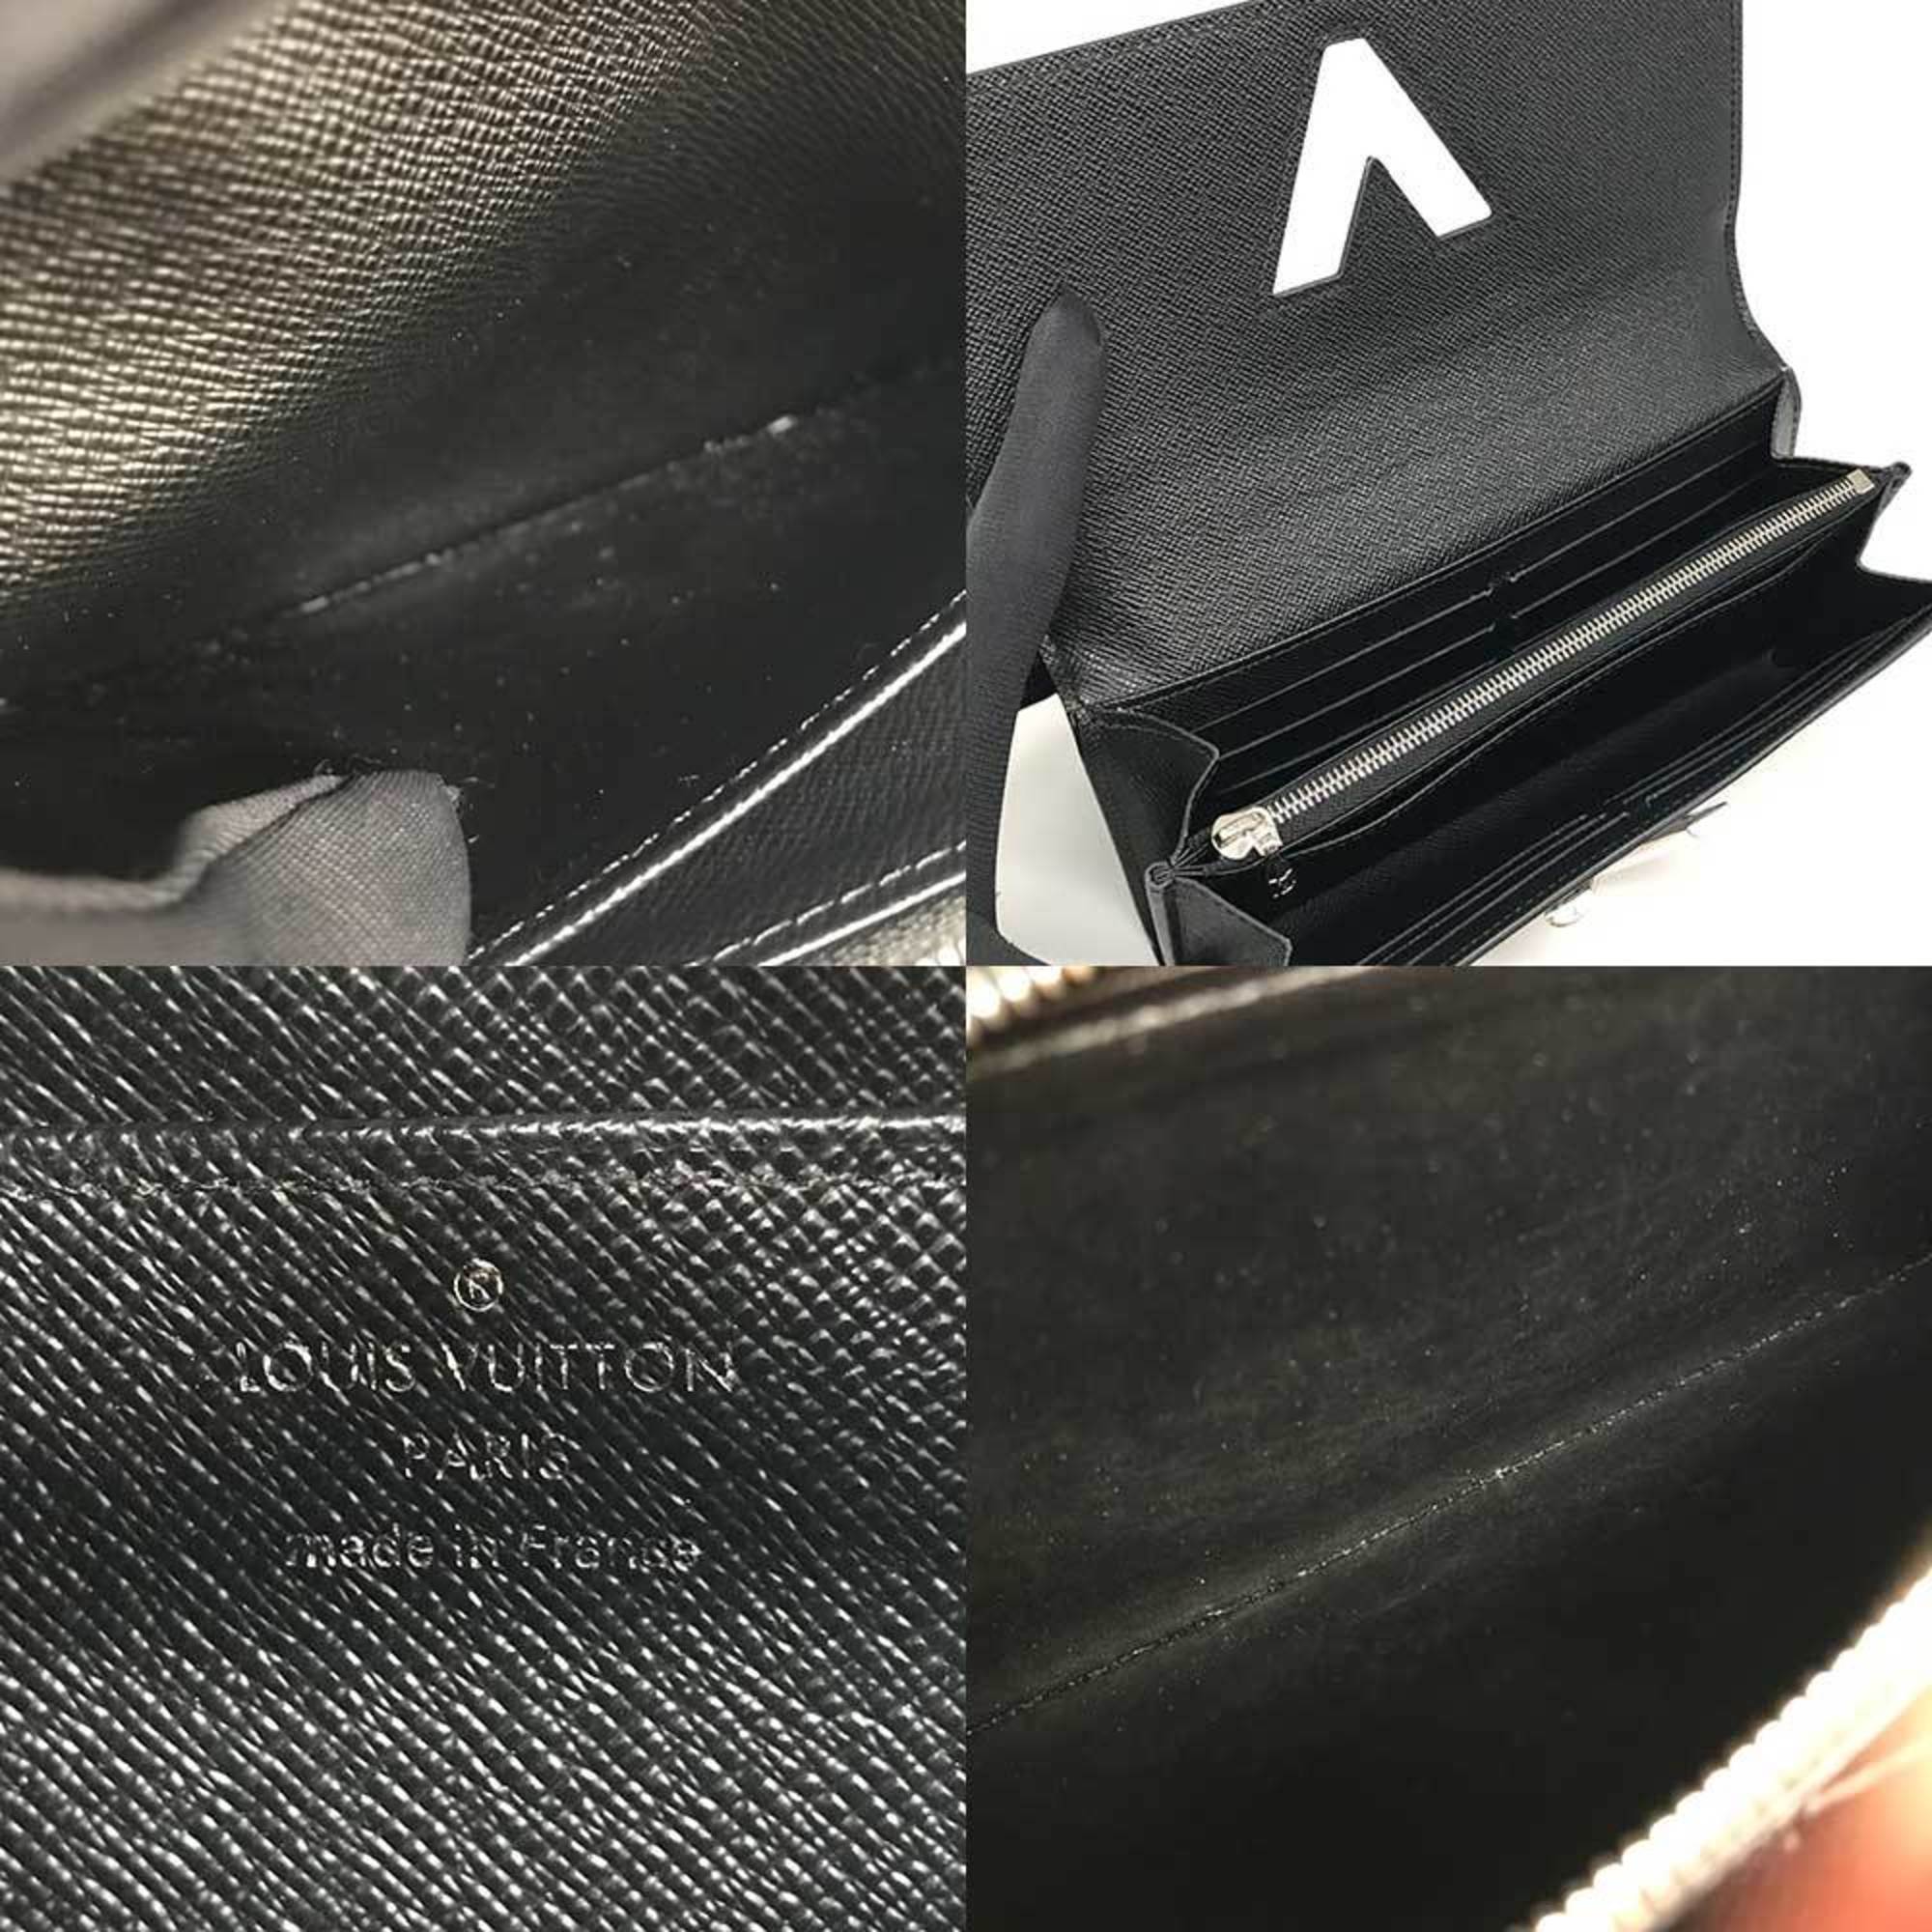 Louis Vuitton Portefeuille Twist Epi Black GO-14 Long Wallet Noir Silver M68309 LOUIS VUITTON